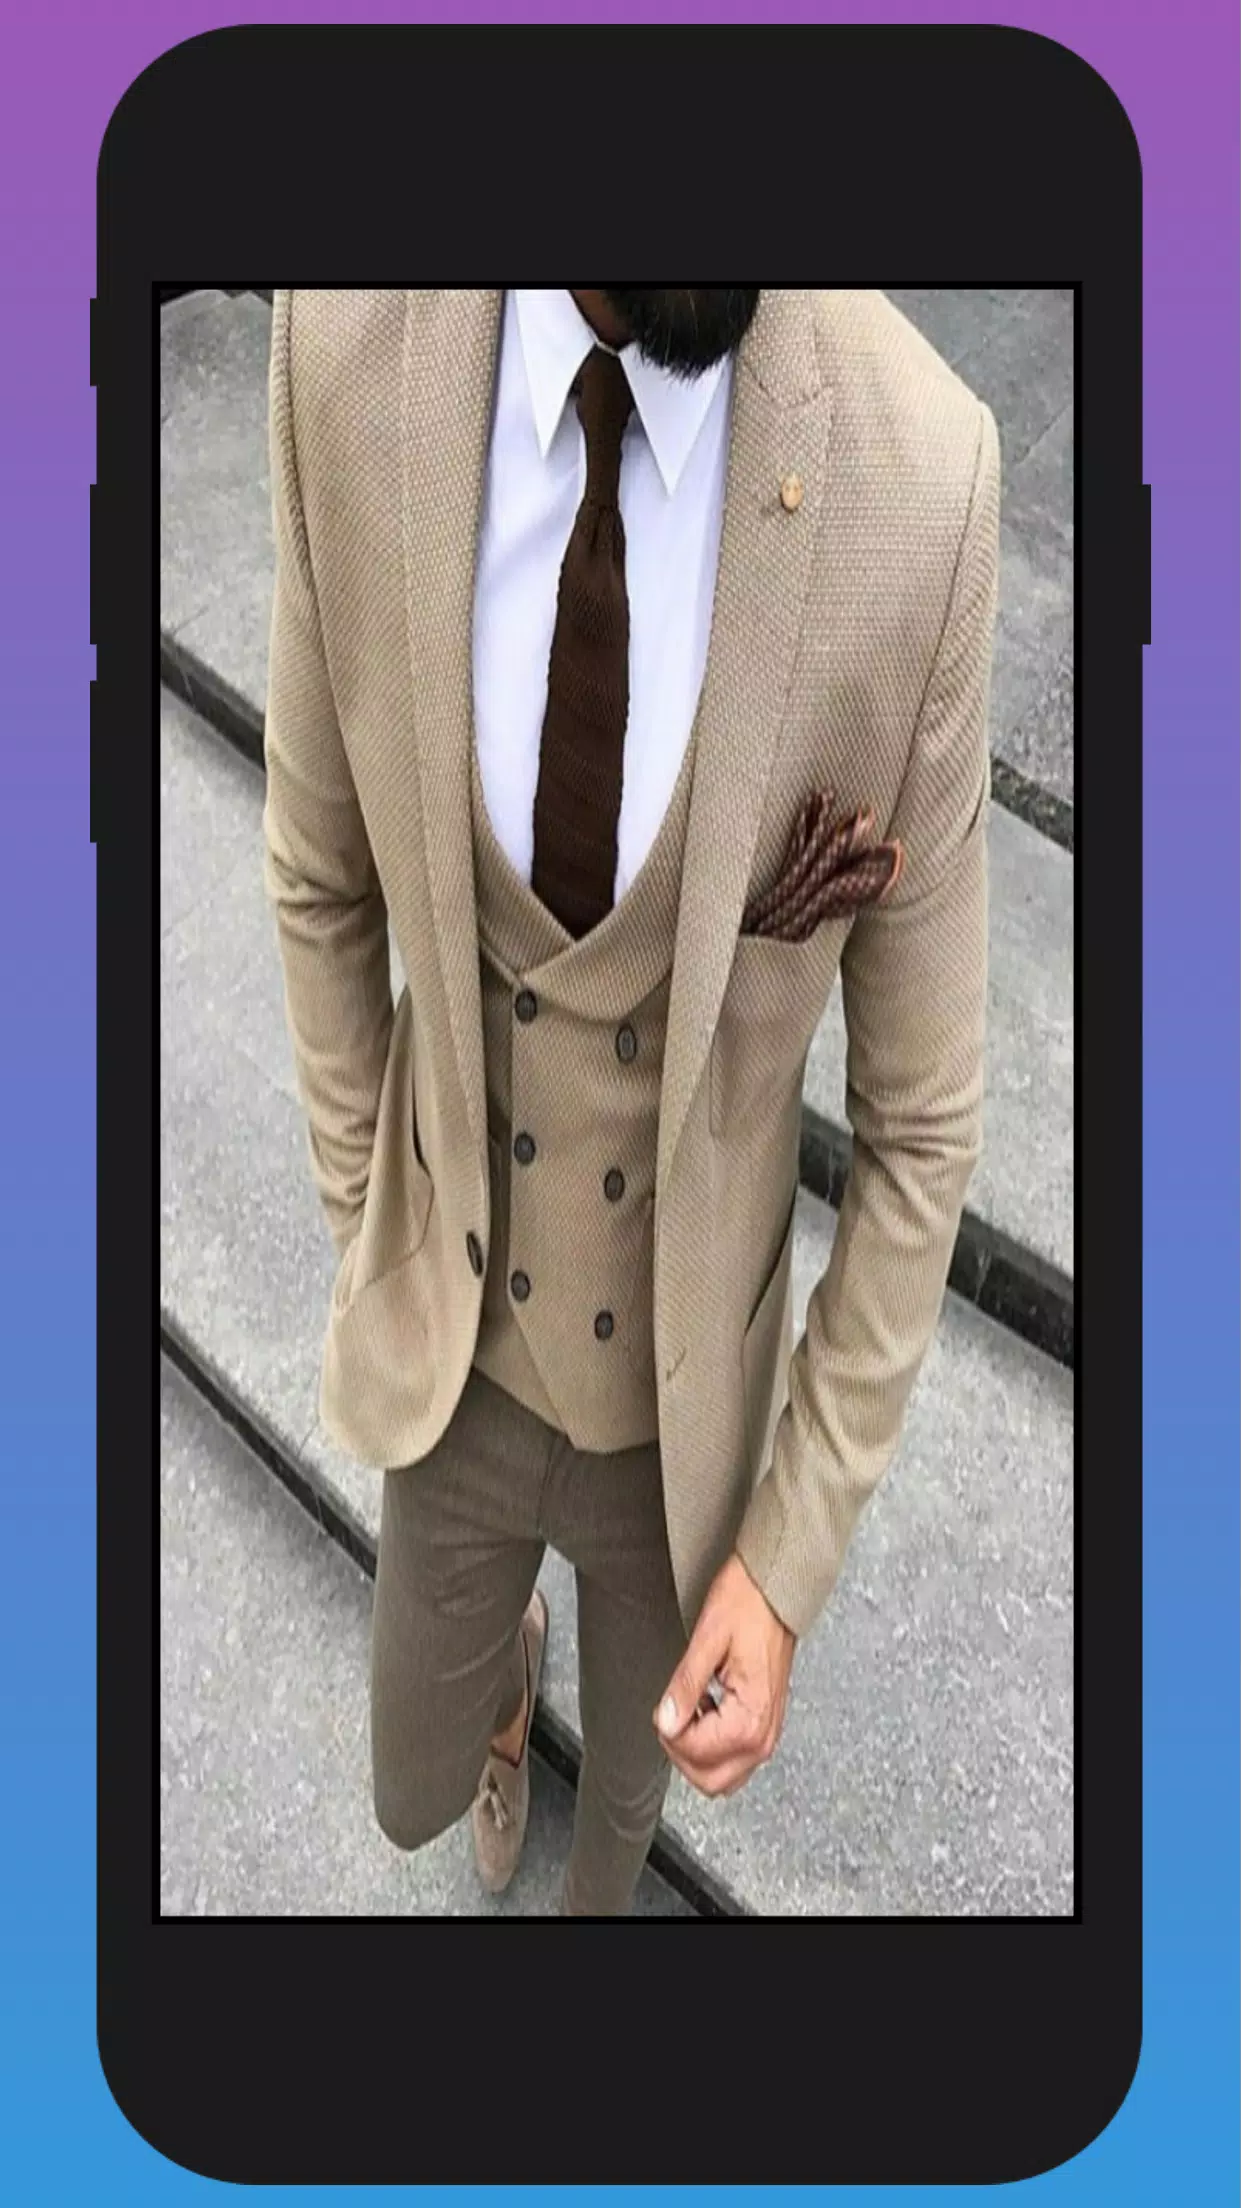 ملابس الرجال : أزياء رجال 2019 APK für Android herunterladen